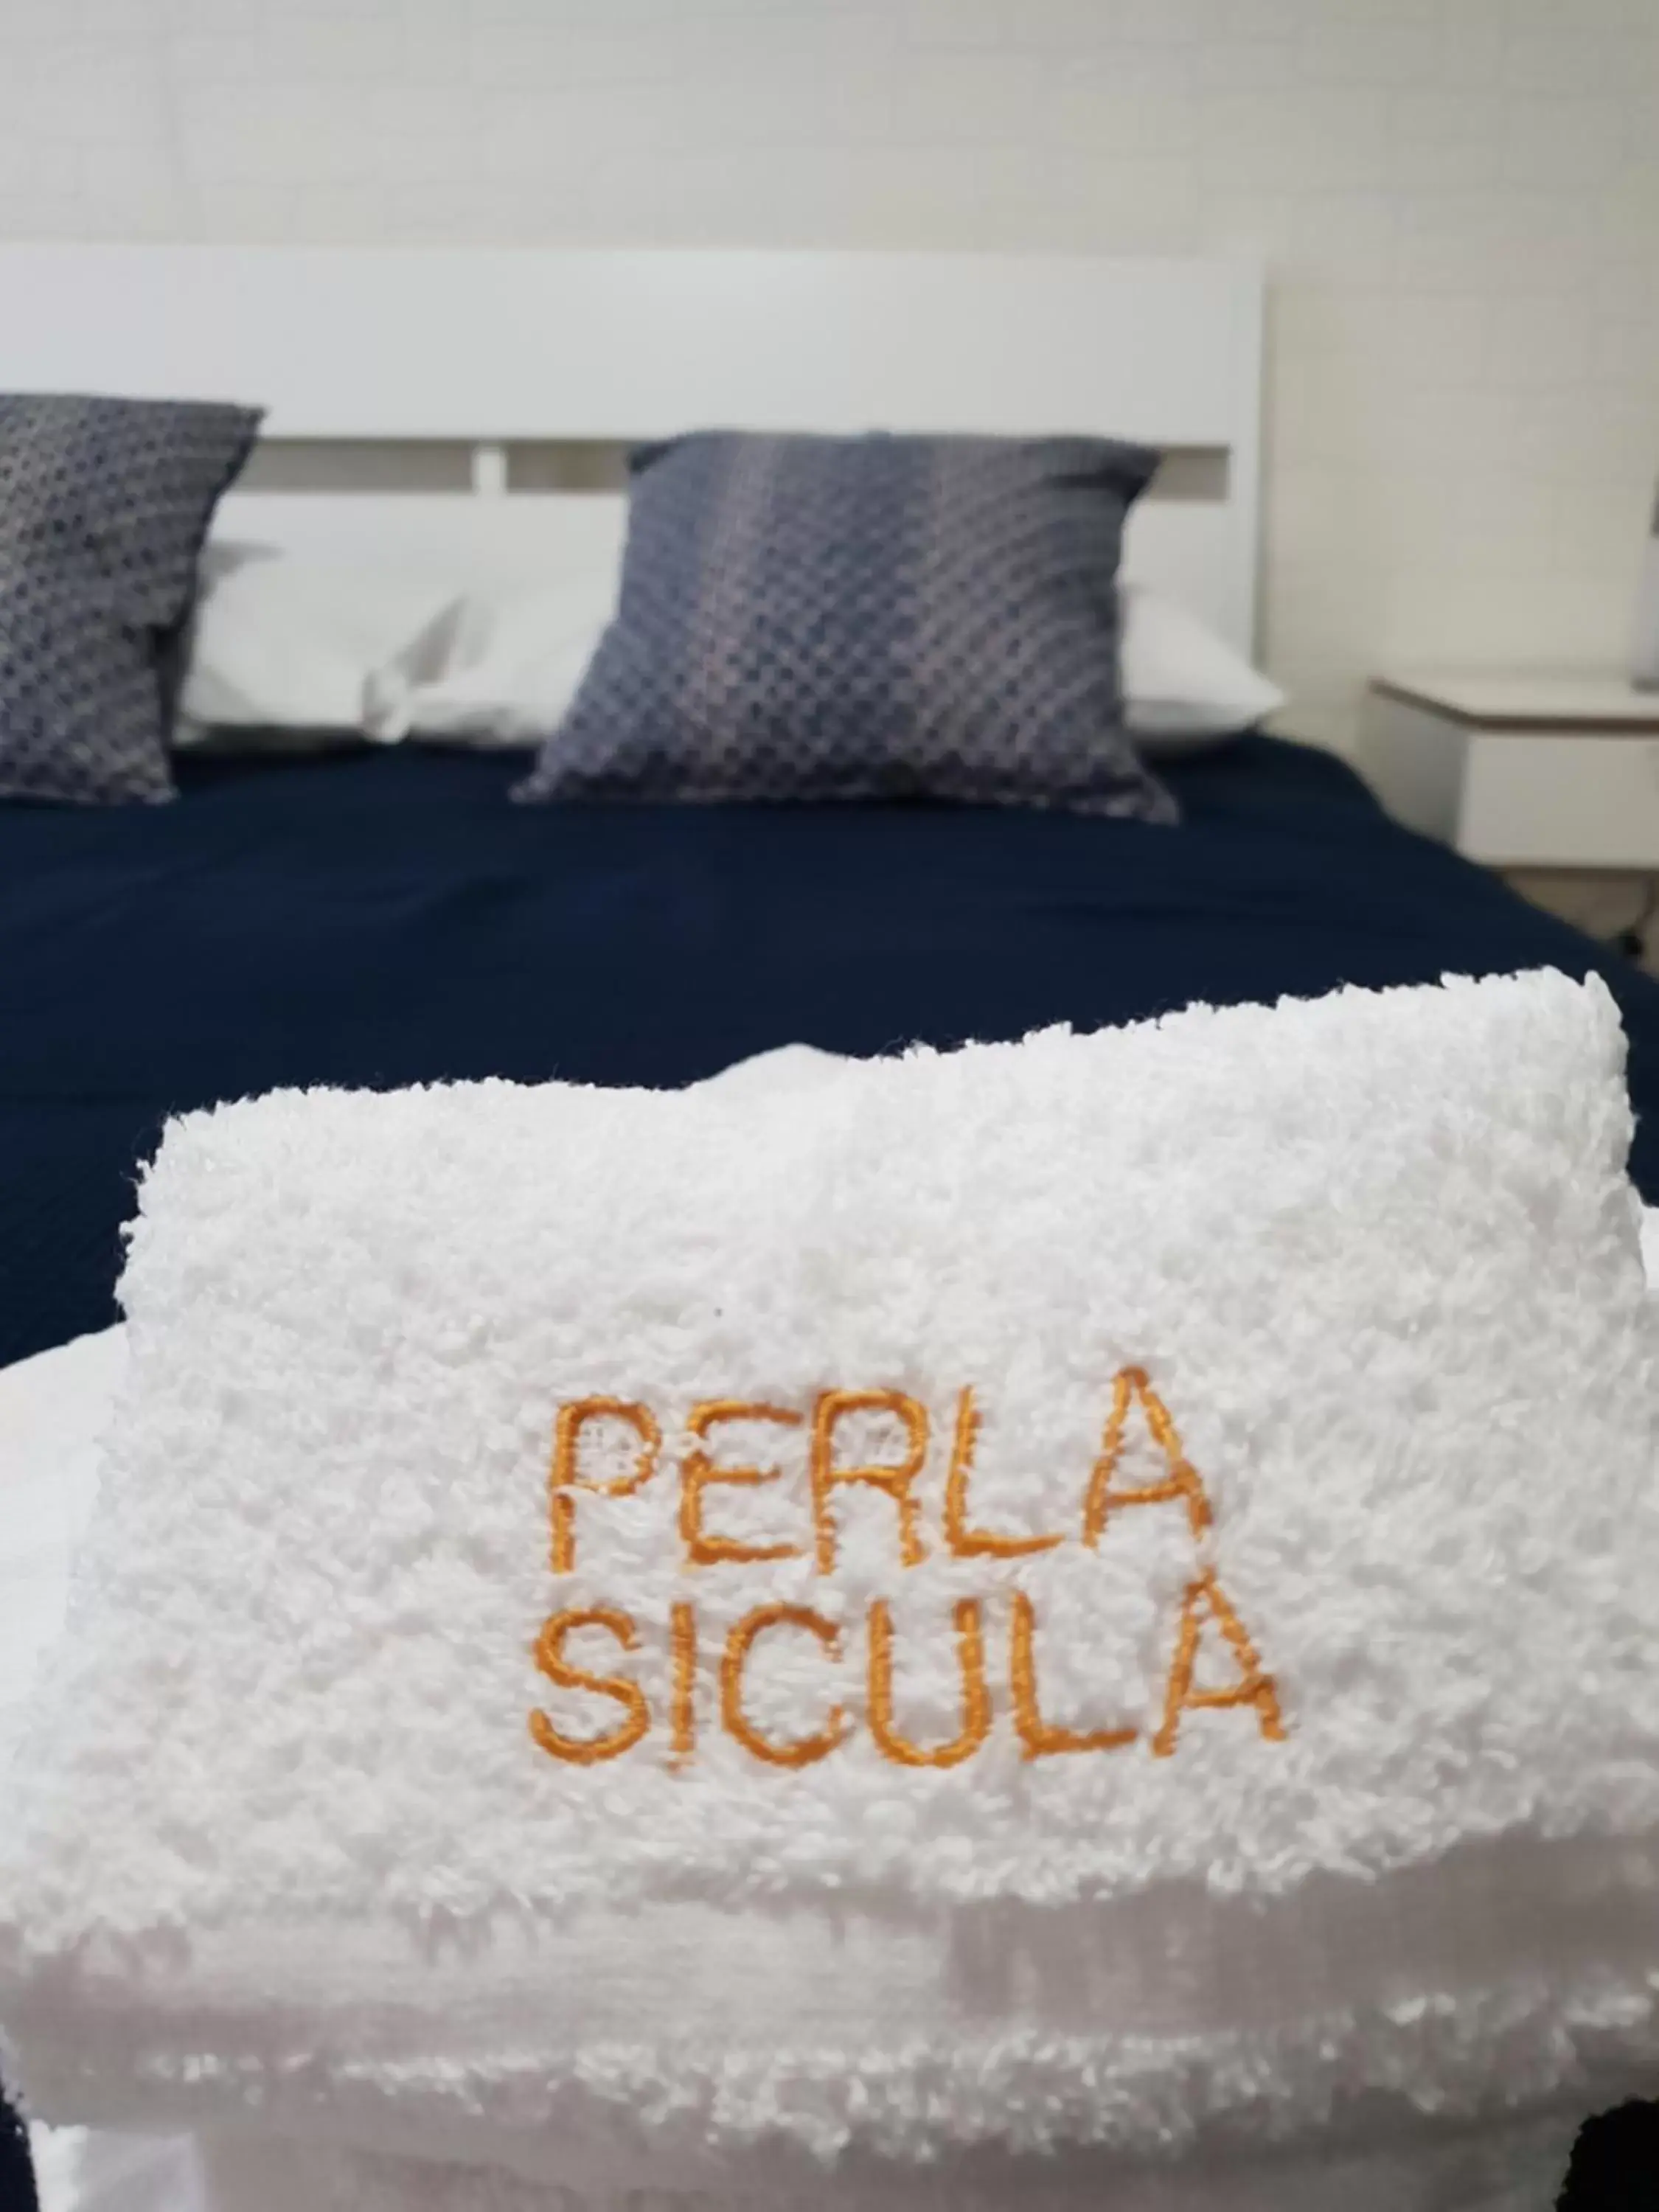 Bed in Perla Sicula